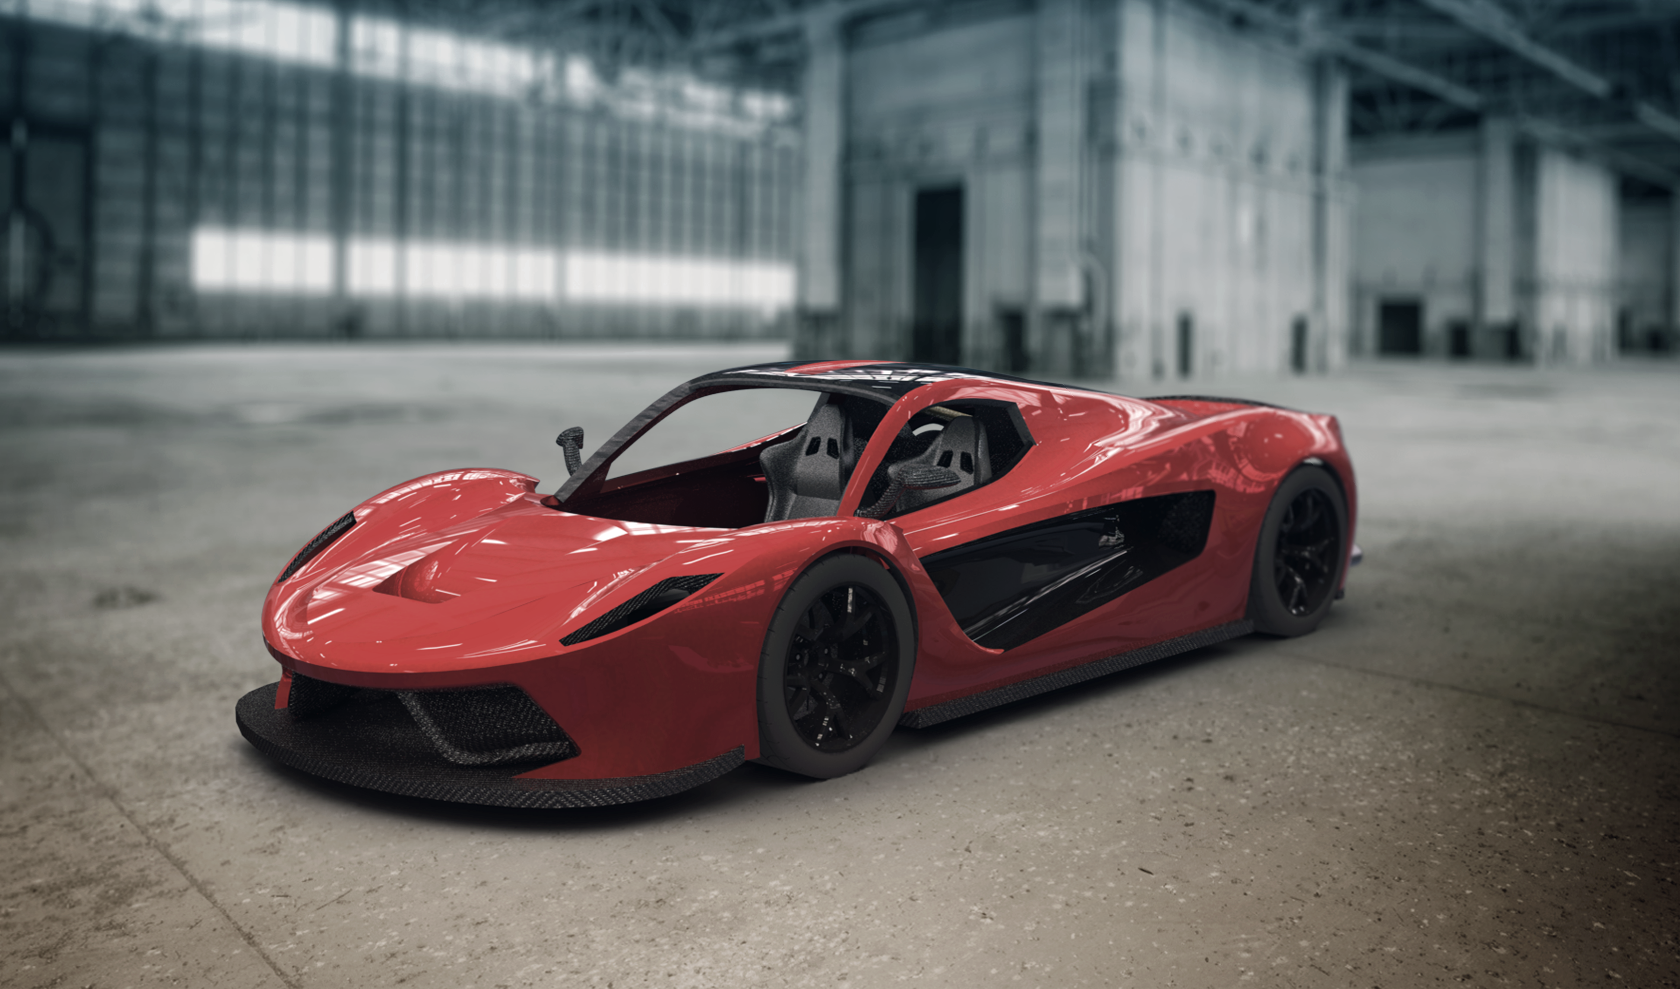 hangar-rendering-car-red.png Download STL file V8 Supercar • 3D printer model, Dekro